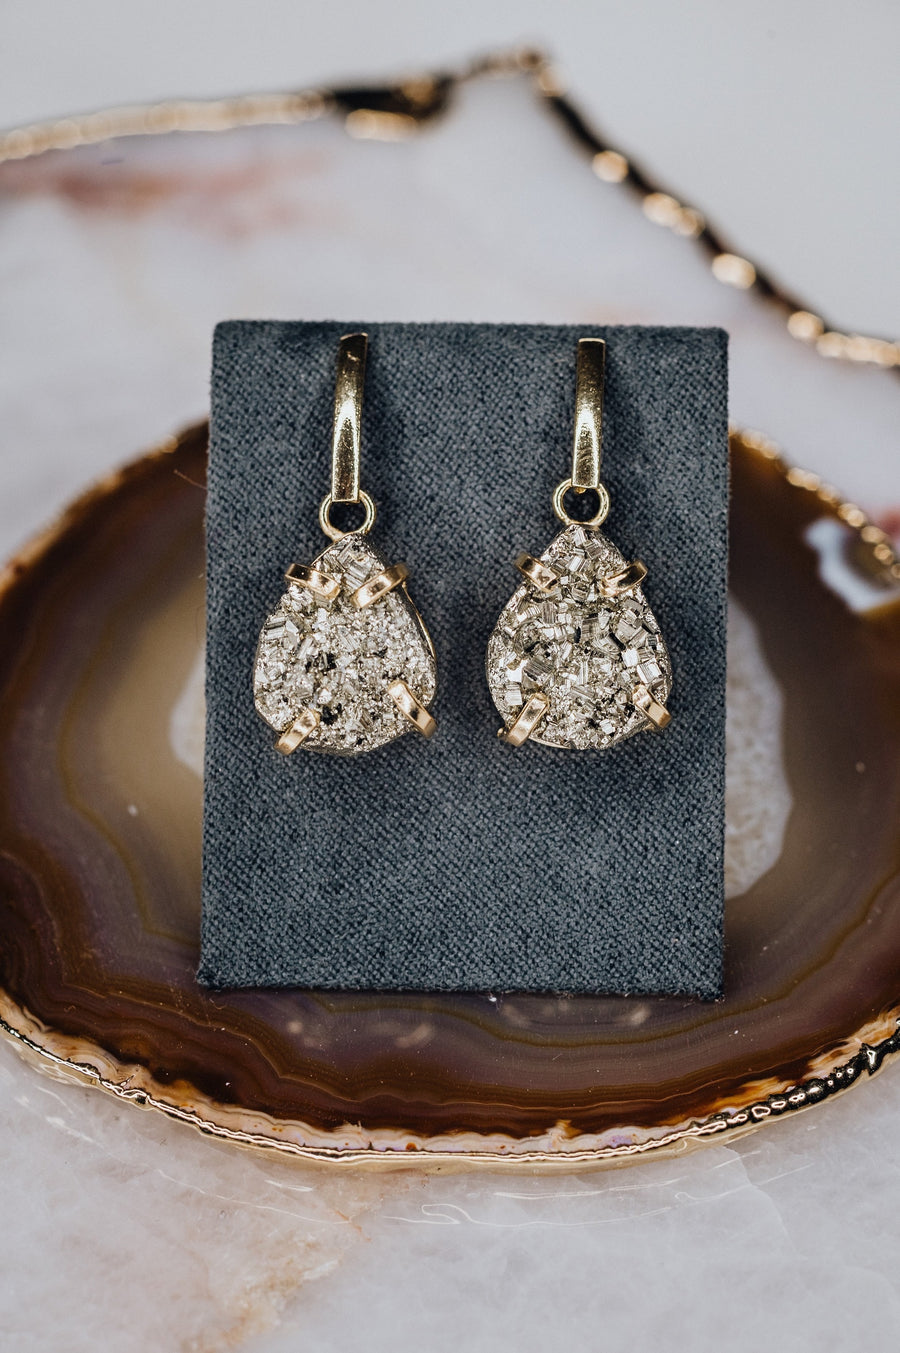 Pyrite teardrop earrings